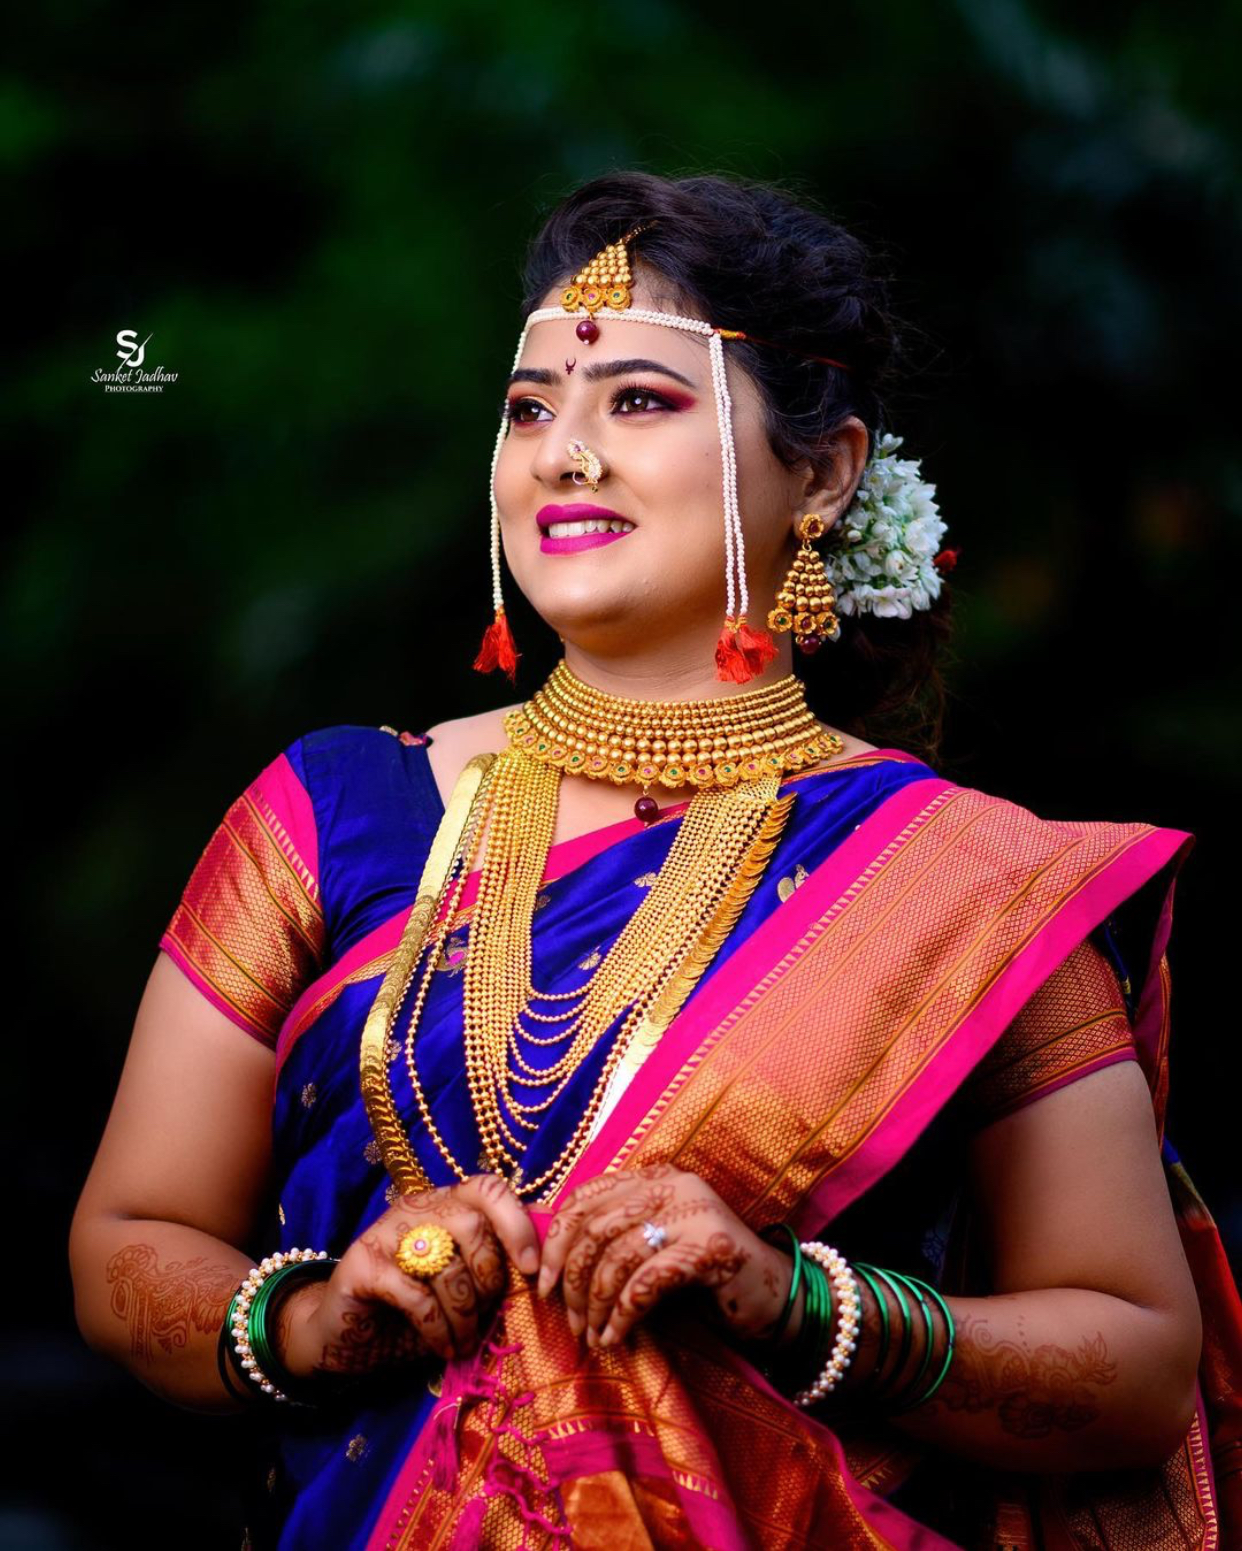 Gorgeous Marathi Brides We're Crushing Upon! - Get Inspiring Ideas for ...